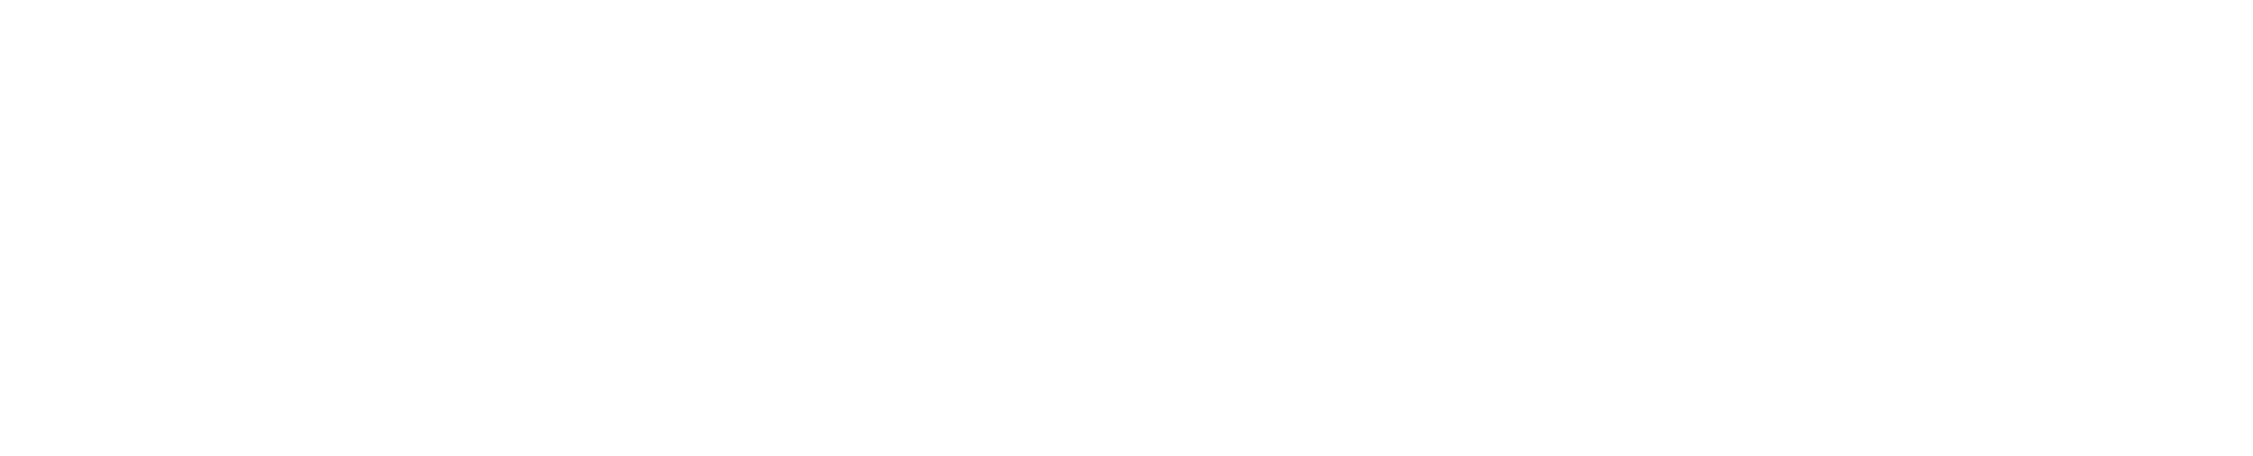 Vest Design